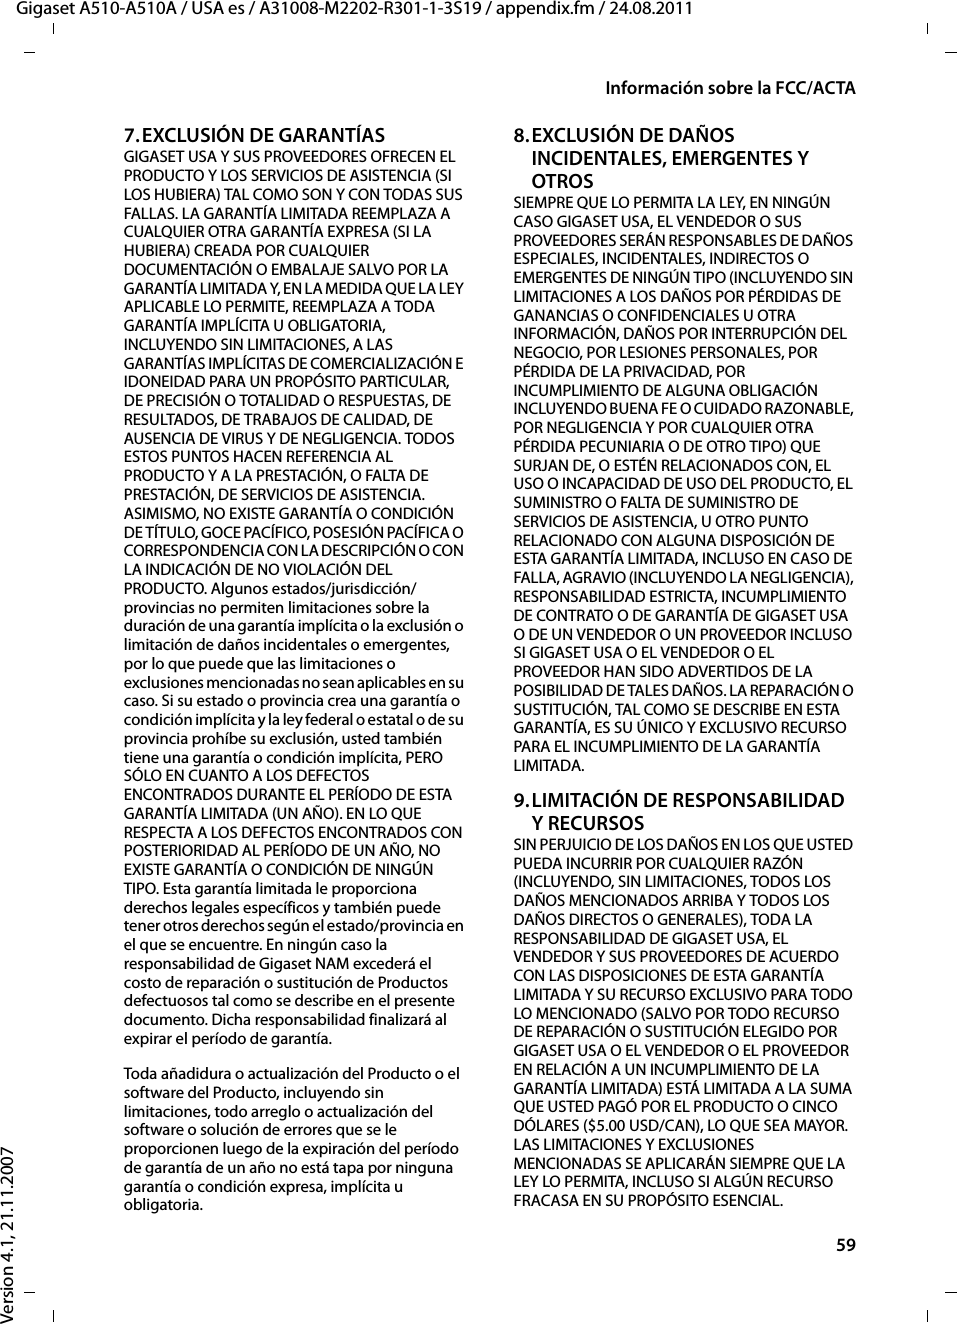 59Información sobre la FCC/ACTAGigaset A510-A510A / USA es / A31008-M2202-R301-1-3S19 / appendix.fm / 24.08.2011Version 4.1, 21.11.20077.EXCLUSIÓN DE GARANTÍASGIGASET USA Y SUS PROVEEDORES OFRECEN EL PRODUCTO Y LOS SERVICIOS DE ASISTENCIA (SI LOS HUBIERA) TAL COMO SON Y CON TODAS SUS FALLAS. LA GARANTÍA LIMITADA REEMPLAZA A CUALQUIER OTRA GARANTÍA EXPRESA (SI LA HUBIERA) CREADA POR CUALQUIER DOCUMENTACIÓN O EMBALAJE SALVO POR LA GARANTÍA LIMITADA Y, EN LA MEDIDA QUE LA LEY APLICABLE LO PERMITE, REEMPLAZA A TODA GARANTÍA IMPLÍCITA U OBLIGATORIA, INCLUYENDO SIN LIMITACIONES, A LAS GARANTÍAS IMPLÍCITAS DE COMERCIALIZACIÓN E IDONEIDAD PARA UN PROPÓSITO PARTICULAR, DE PRECISIÓN O TOTALIDAD O RESPUESTAS, DE RESULTADOS, DE TRABAJOS DE CALIDAD, DE AUSENCIA DE VIRUS Y DE NEGLIGENCIA. TODOS ESTOS PUNTOS HACEN REFERENCIA AL PRODUCTO Y A LA PRESTACIÓN, O FALTA DE PRESTACIÓN, DE SERVICIOS DE ASISTENCIA. ASIMISMO, NO EXISTE GARANTÍA O CONDICIÓN DE TÍTULO, GOCE PACÍFICO, POSESIÓN PACÍFICA O CORRESPONDENCIA CON LA DESCRIPCIÓN O CON LA INDICACIÓN DE NO VIOLACIÓN DEL PRODUCTO. Algunos estados/jurisdicción/provincias no permiten limitaciones sobre la duración de una garantía implícita o la exclusión o limitación de daños incidentales o emergentes, por lo que puede que las limitaciones o exclusiones mencionadas no sean aplicables en su caso. Si su estado o provincia crea una garantía o condición implícita y la ley federal o estatal o de su provincia prohíbe su exclusión, usted también tiene una garantía o condición implícita, PERO SÓLO EN CUANTO A LOS DEFECTOS ENCONTRADOS DURANTE EL PERÍODO DE ESTA GARANTÍA LIMITADA (UN AÑO). EN LO QUE RESPECTA A LOS DEFECTOS ENCONTRADOS CON POSTERIORIDAD AL PERÍODO DE UN AÑO, NO EXISTE GARANTÍA O CONDICIÓN DE NINGÚN TIPO. Esta garantía limitada le proporciona derechos legales específicos y también puede tener otros derechos según el estado/provincia en el que se encuentre. En ningún caso la responsabilidad de Gigaset NAM excederá el costo de reparación o sustitución de Productos defectuosos tal como se describe en el presente documento. Dicha responsabilidad finalizará al expirar el período de garantía.Toda añadidura o actualización del Producto o el software del Producto, incluyendo sin limitaciones, todo arreglo o actualización del software o solución de errores que se le proporcionen luego de la expiración del período de garantía de un año no está tapa por ninguna garantía o condición expresa, implícita u obligatoria.8.EXCLUSIÓN DE DAÑOS INCIDENTALES, EMERGENTES Y OTROS SIEMPRE QUE LO PERMITA LA LEY, EN NINGÚN CASO GIGASET USA, EL VENDEDOR O SUS PROVEEDORES SERÁN RESPONSABLES DE DAÑOS ESPECIALES, INCIDENTALES, INDIRECTOS O EMERGENTES DE NINGÚN TIPO (INCLUYENDO SIN LIMITACIONES A LOS DAÑOS POR PÉRDIDAS DE GANANCIAS O CONFIDENCIALES U OTRA INFORMACIÓN, DAÑOS POR INTERRUPCIÓN DEL NEGOCIO, POR LESIONES PERSONALES, POR PÉRDIDA DE LA PRIVACIDAD, POR INCUMPLIMIENTO DE ALGUNA OBLIGACIÓN INCLUYENDO BUENA FE O CUIDADO RAZONABLE, POR NEGLIGENCIA Y POR CUALQUIER OTRA PÉRDIDA PECUNIARIA O DE OTRO TIPO) QUE SURJAN DE, O ESTÉN RELACIONADOS CON, EL USO O INCAPACIDAD DE USO DEL PRODUCTO, EL SUMINISTRO O FALTA DE SUMINISTRO DE SERVICIOS DE ASISTENCIA, U OTRO PUNTO RELACIONADO CON ALGUNA DISPOSICIÓN DE ESTA GARANTÍA LIMITADA, INCLUSO EN CASO DE FALLA, AGRAVIO (INCLUYENDO LA NEGLIGENCIA), RESPONSABILIDAD ESTRICTA, INCUMPLIMIENTO DE CONTRATO O DE GARANTÍA DE GIGASET USA O DE UN VENDEDOR O UN PROVEEDOR INCLUSO SI GIGASET USA O EL VENDEDOR O EL PROVEEDOR HAN SIDO ADVERTIDOS DE LA POSIBILIDAD DE TALES DAÑOS. LA REPARACIÓN O SUSTITUCIÓN, TAL COMO SE DESCRIBE EN ESTA GARANTÍA, ES SU ÚNICO Y EXCLUSIVO RECURSO PARA EL INCUMPLIMIENTO DE LA GARANTÍA LIMITADA. 9.LIMITACIÓN DE RESPONSABILIDAD Y RECURSOS SIN PERJUICIO DE LOS DAÑOS EN LOS QUE USTED PUEDA INCURRIR POR CUALQUIER RAZÓN (INCLUYENDO, SIN LIMITACIONES, TODOS LOS DAÑOS MENCIONADOS ARRIBA Y TODOS LOS DAÑOS DIRECTOS O GENERALES), TODA LA RESPONSABILIDAD DE GIGASET USA, EL VENDEDOR Y SUS PROVEEDORES DE ACUERDO CON LAS DISPOSICIONES DE ESTA GARANTÍA LIMITADA Y SU RECURSO EXCLUSIVO PARA TODO LO MENCIONADO (SALVO POR TODO RECURSO DE REPARACIÓN O SUSTITUCIÓN ELEGIDO POR GIGASET USA O EL VENDEDOR O EL PROVEEDOR EN RELACIÓN A UN INCUMPLIMIENTO DE LA GARANTÍA LIMITADA) ESTÁ LIMITADA A LA SUMA QUE USTED PAGÓ POR EL PRODUCTO O CINCO DÓLARES ($5.00 USD/CAN), LO QUE SEA MAYOR. LAS LIMITACIONES Y EXCLUSIONES MENCIONADAS SE APLICARÁN SIEMPRE QUE LA LEY LO PERMITA, INCLUSO SI ALGÚN RECURSO FRACASA EN SU PROPÓSITO ESENCIAL.